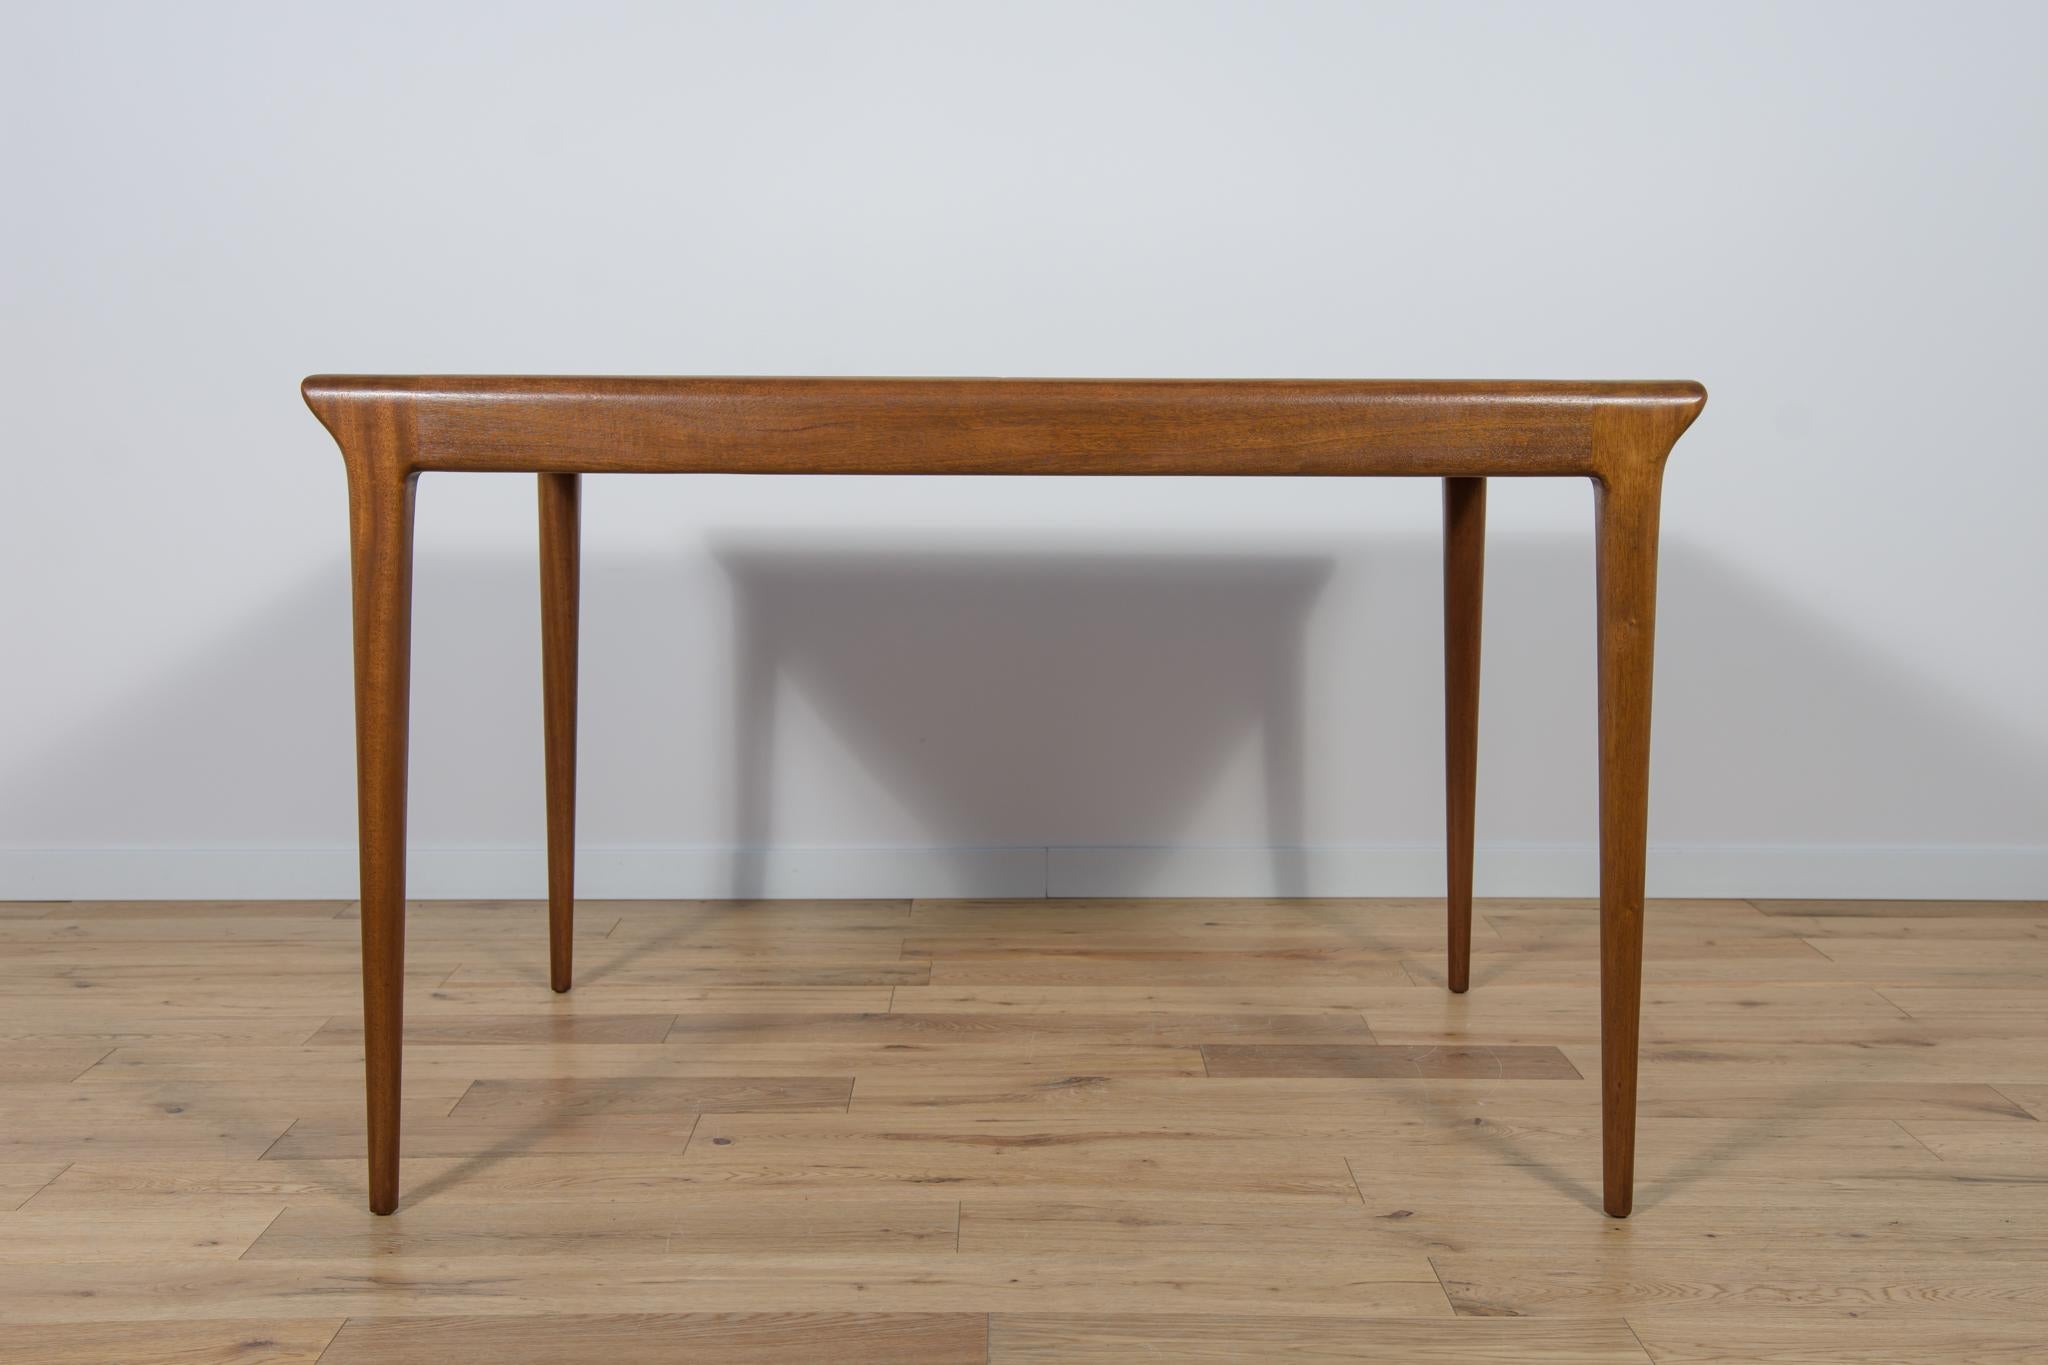 Une table rectangulaire à la forme légère et sublime, fabriquée par la manufacture britannique McIntosh dans les années 1960. La table est fabriquée en bois de teck, le plateau est plaqué en bois de zebrano. La table est dotée d'un mécanisme simple